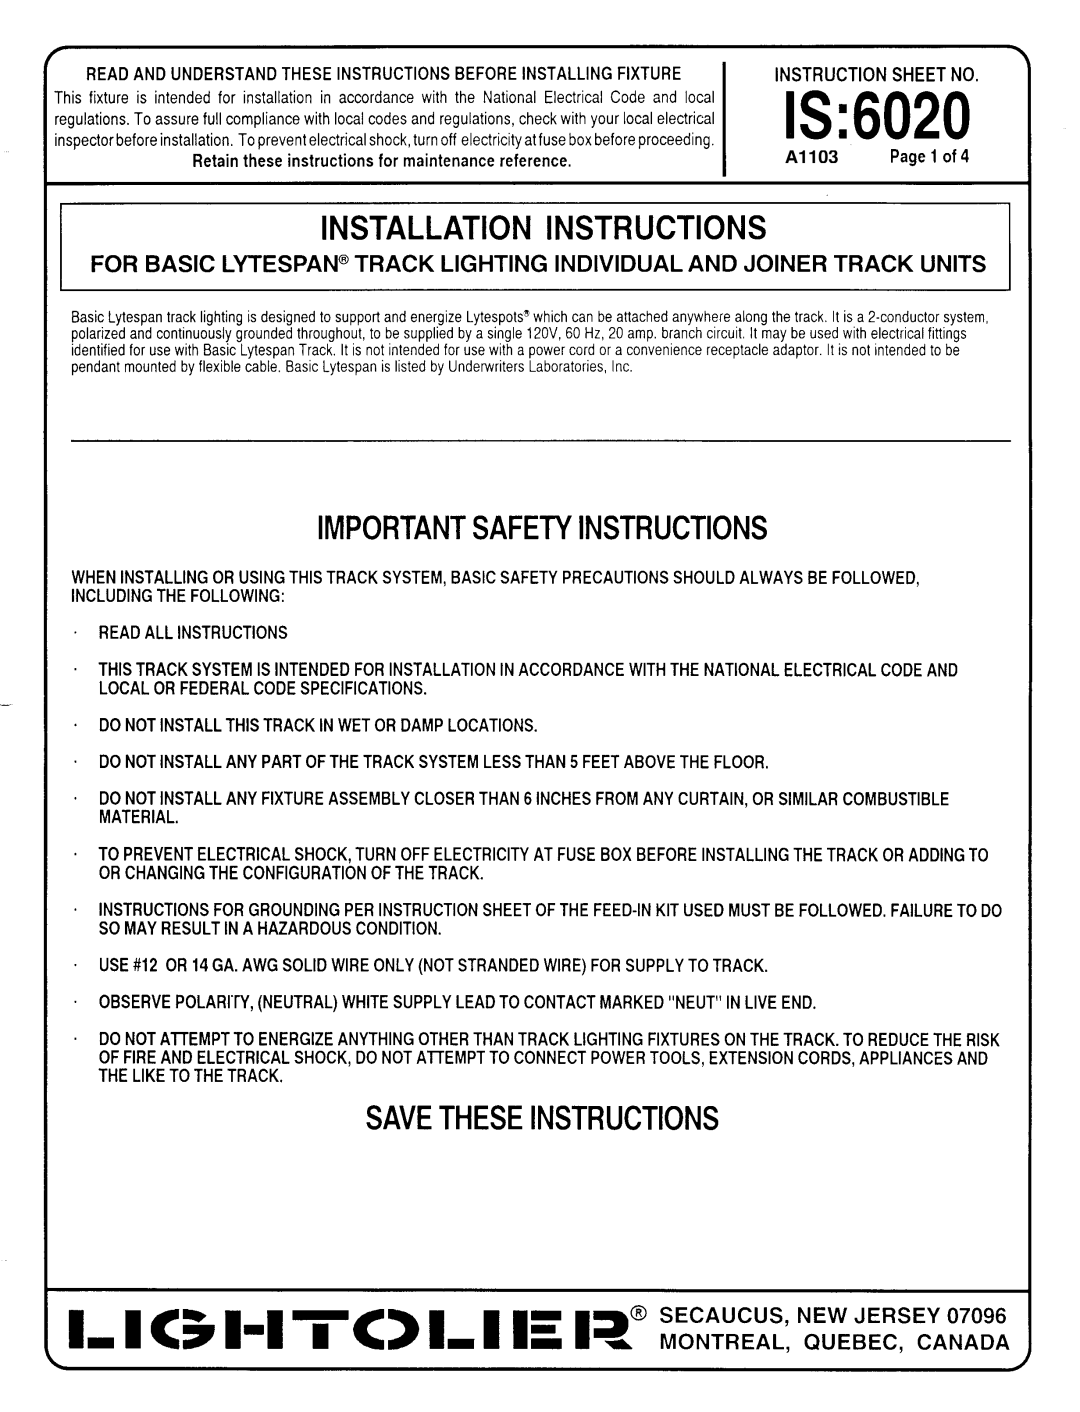 Lightolier 6020T installation instructions 1-1 51-1 TC L I E 1?”i%iEL & sWRR, Is, Installation Instructions 